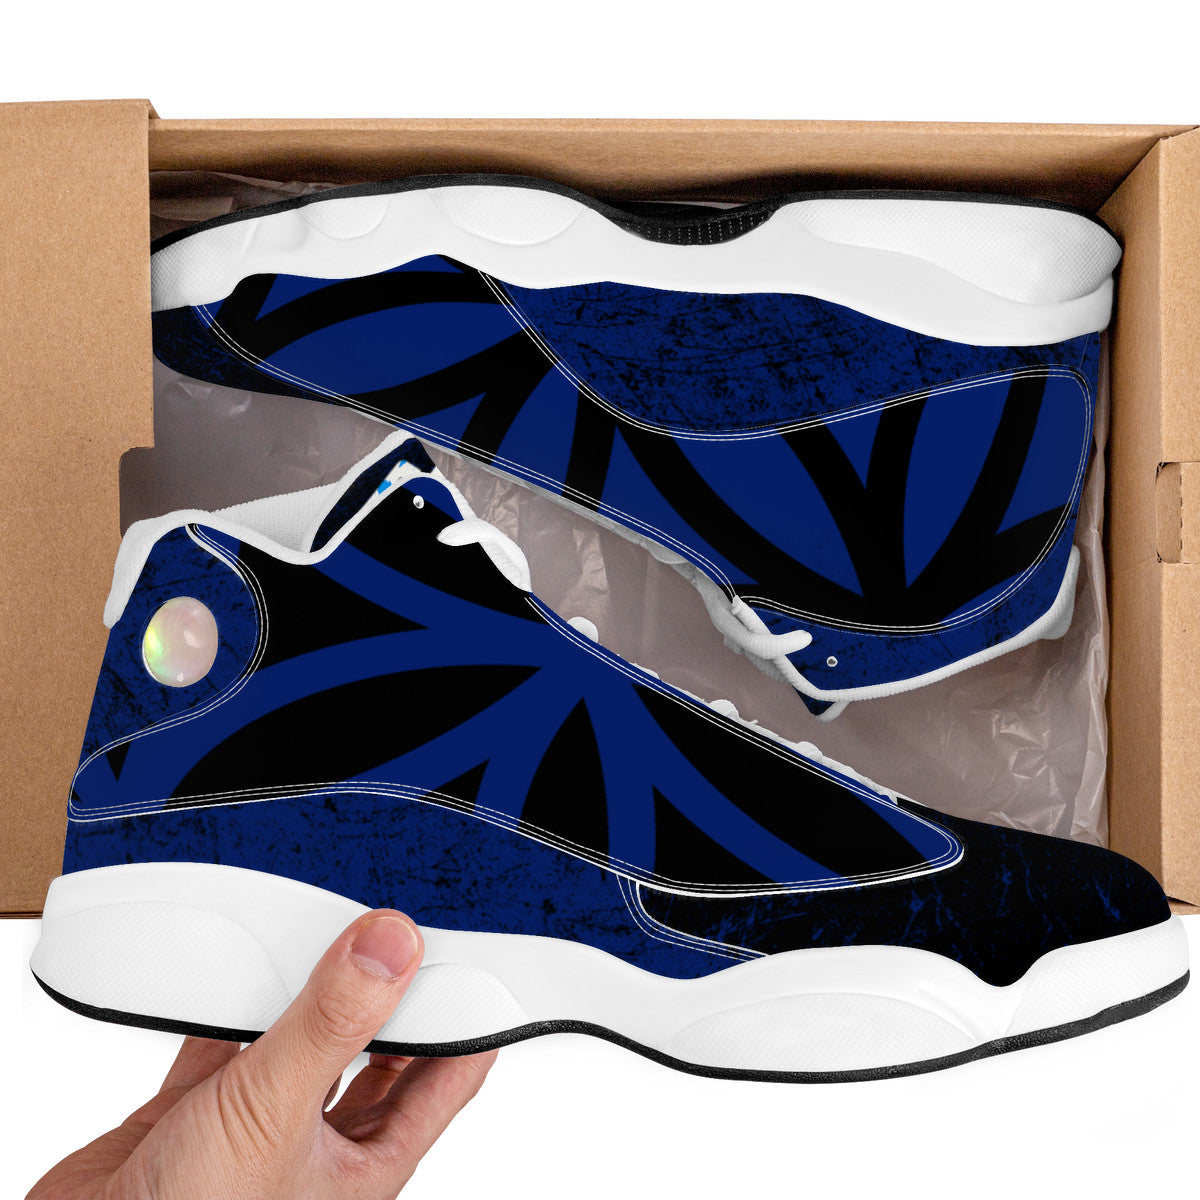 RVT Basketball Shoes - Fractal Blue/Black